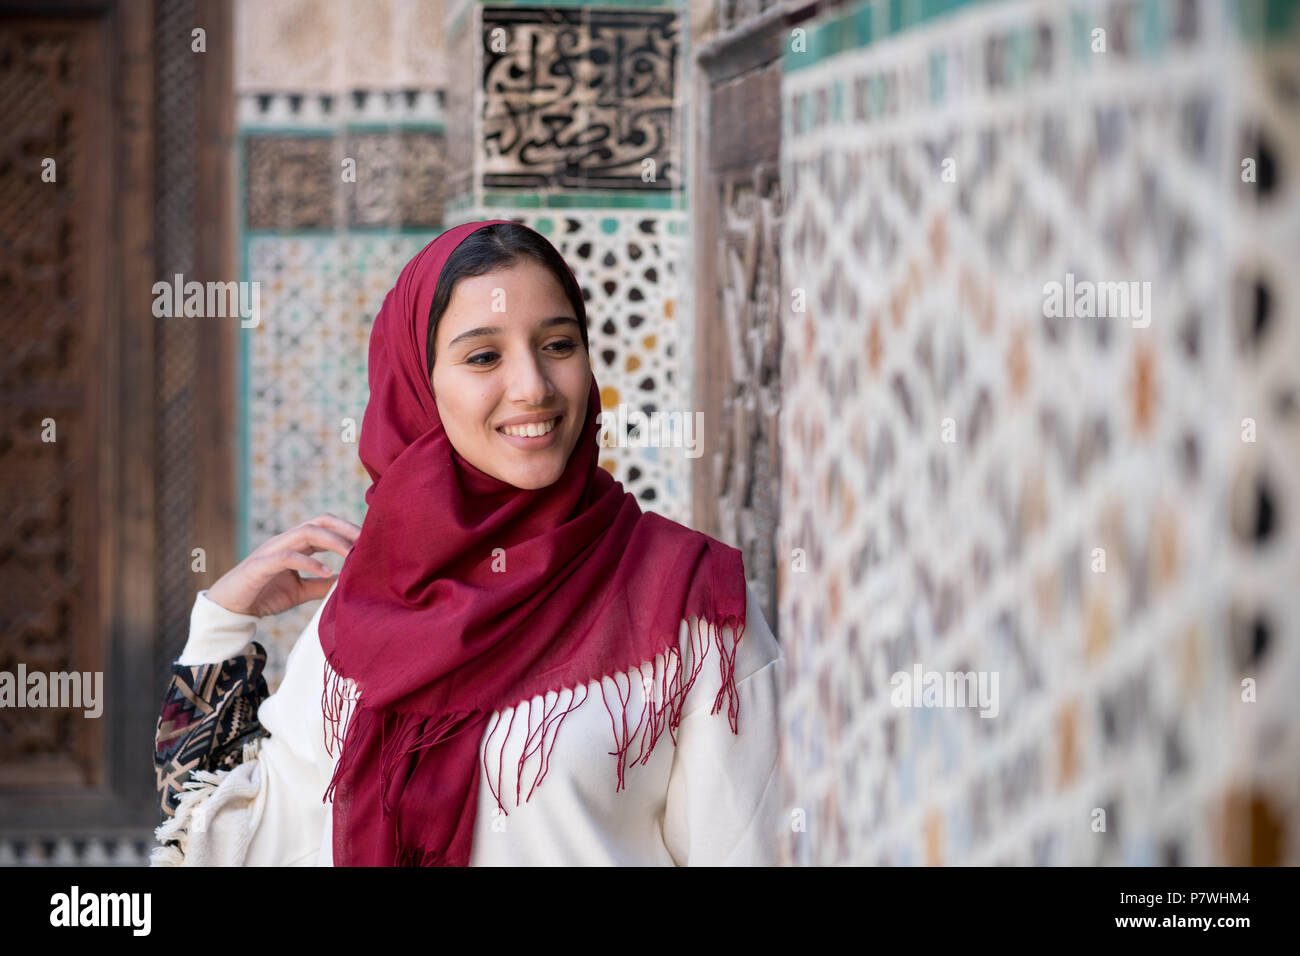 Retrato de mujer musulmana sonriente en trajes tradicionales con pañuelo rojo delante del muro decorado arabesco tradicional Foto de stock